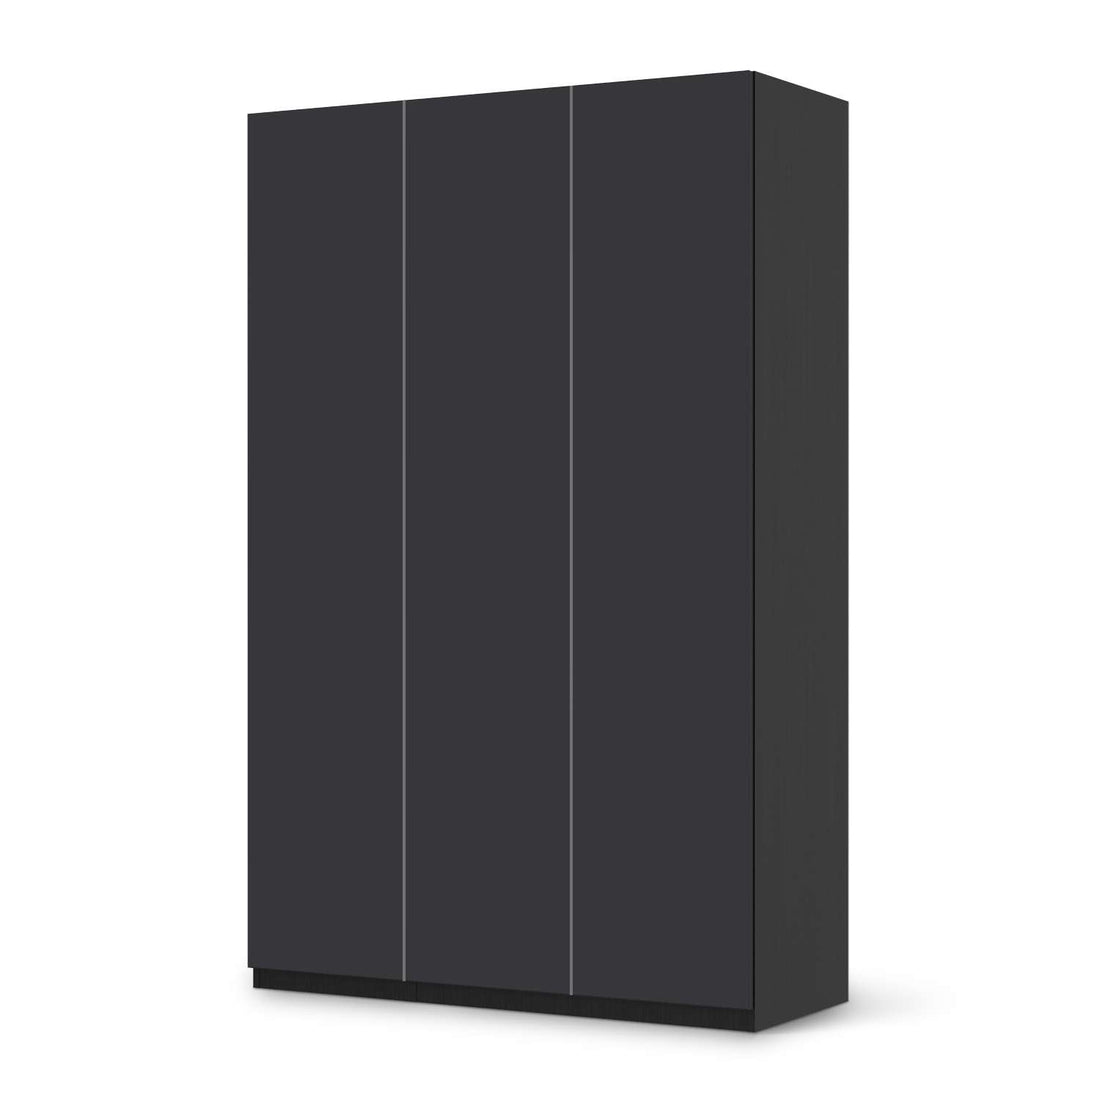 Selbstklebende Folie Grau Dark - IKEA Pax Schrank 236 cm Höhe - 3 Türen - schwarz